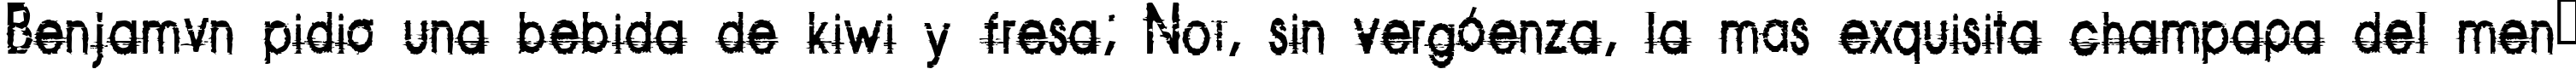 Пример написания шрифтом Corazon текста на испанском